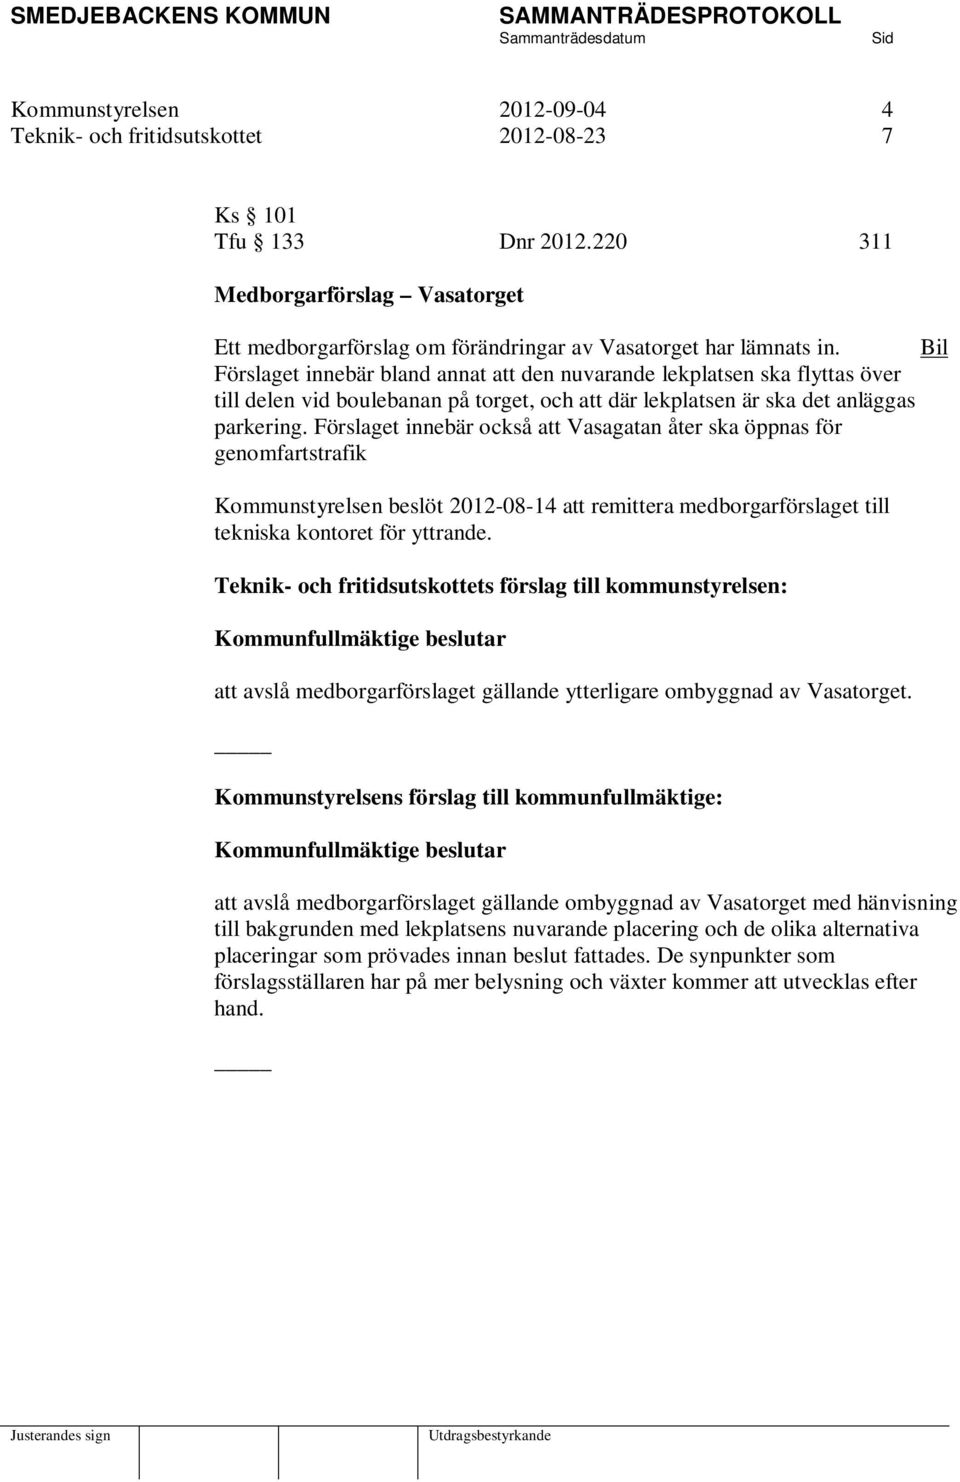 Förslaget innebär också att Vasagatan åter ska öppnas för genomfartstrafik Kommunstyrelsen beslöt 2012-08-14 att remittera medborgarförslaget till tekniska kontoret för yttrande.